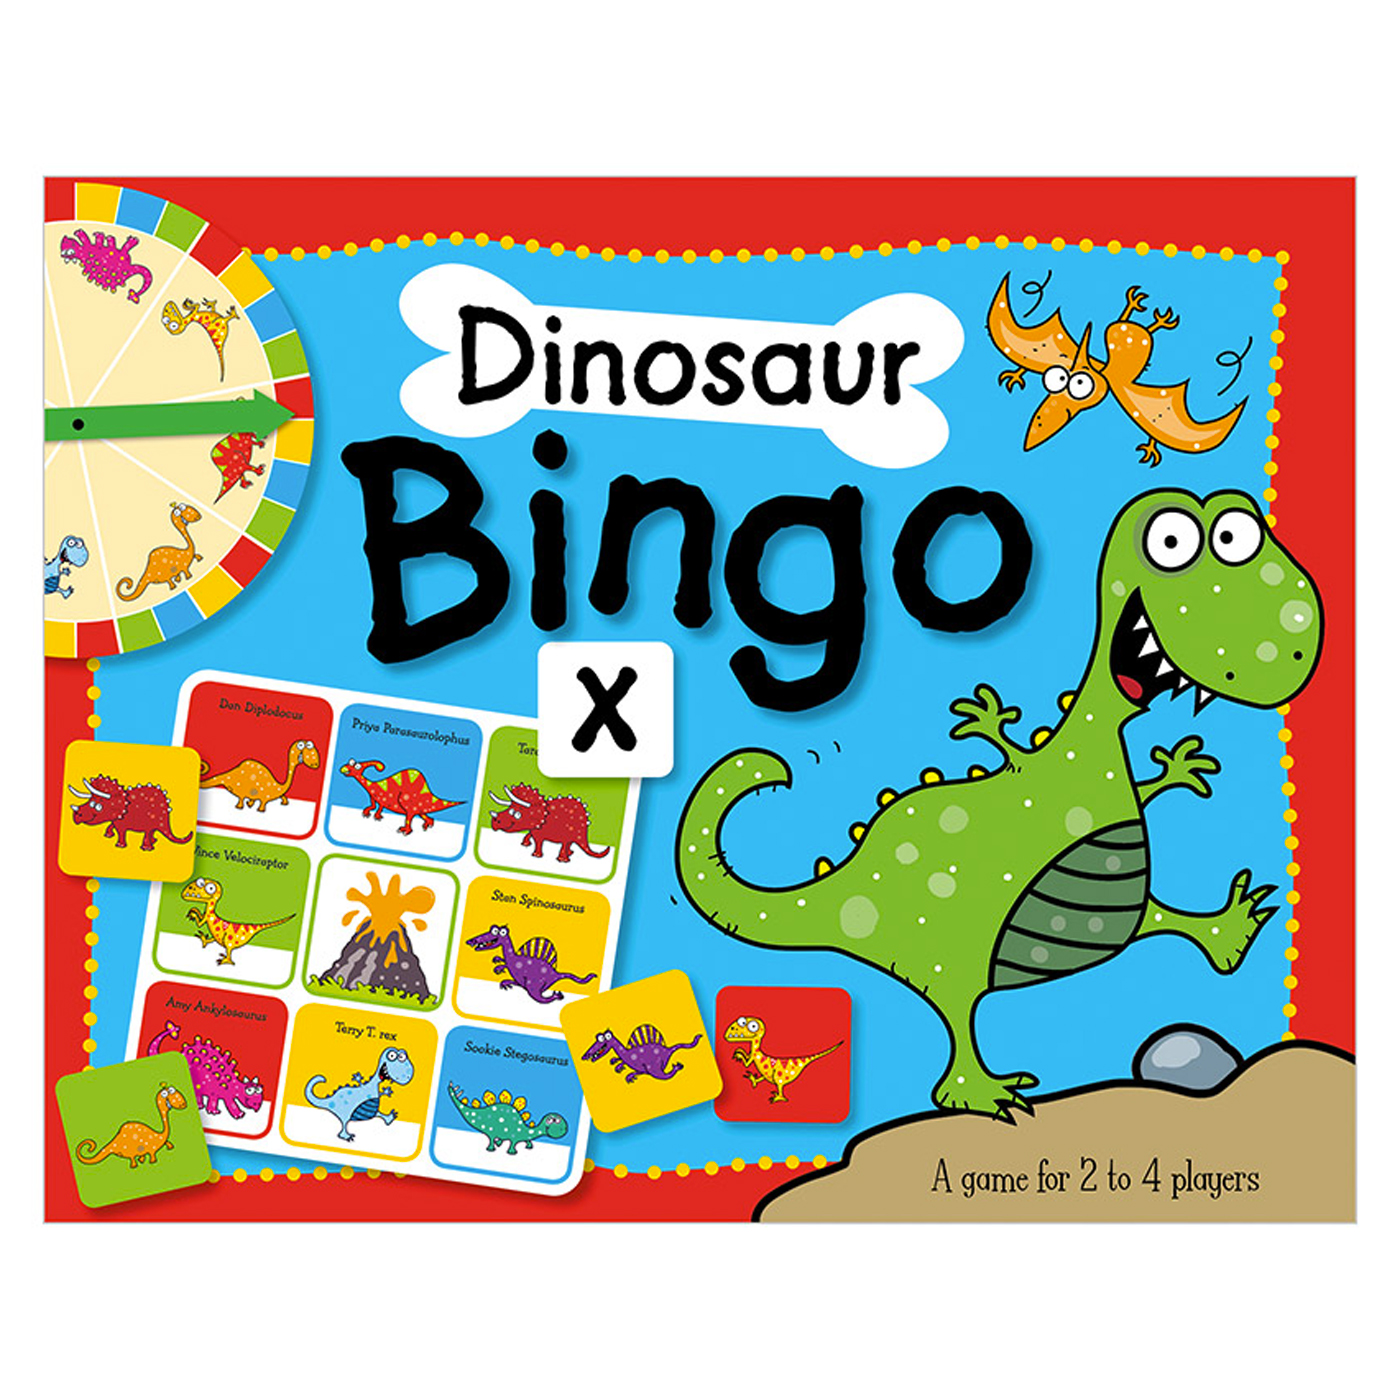  Dinosaur Bingo